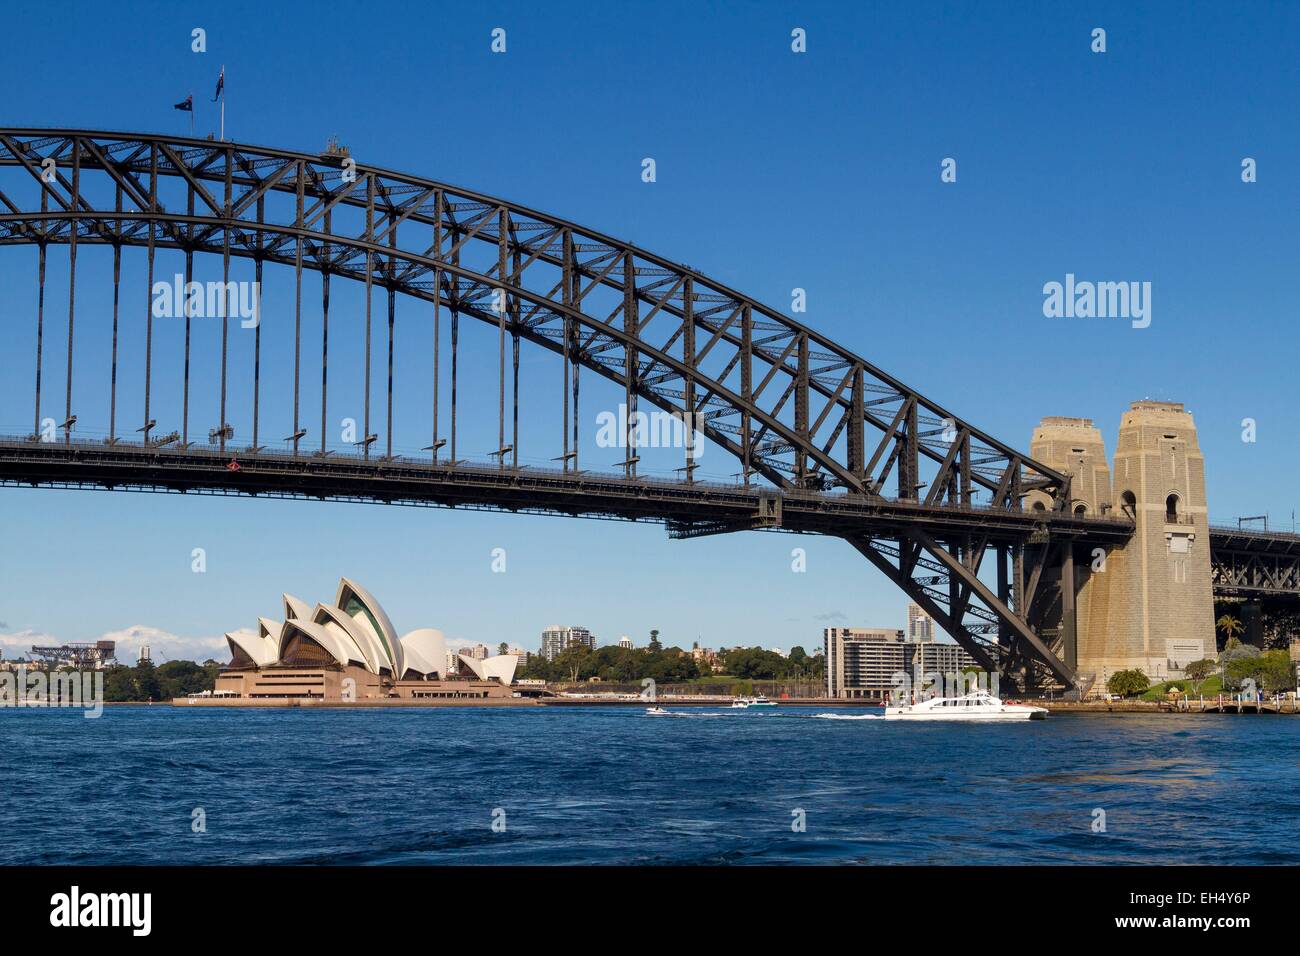 Australia, Nuovo Galles del Sud, Sydney Harbour Bridge e la Opera House di Sydney dall'architetto Jørn Utzon elencati come patrimonio mondiale dall' UNESCO Foto Stock